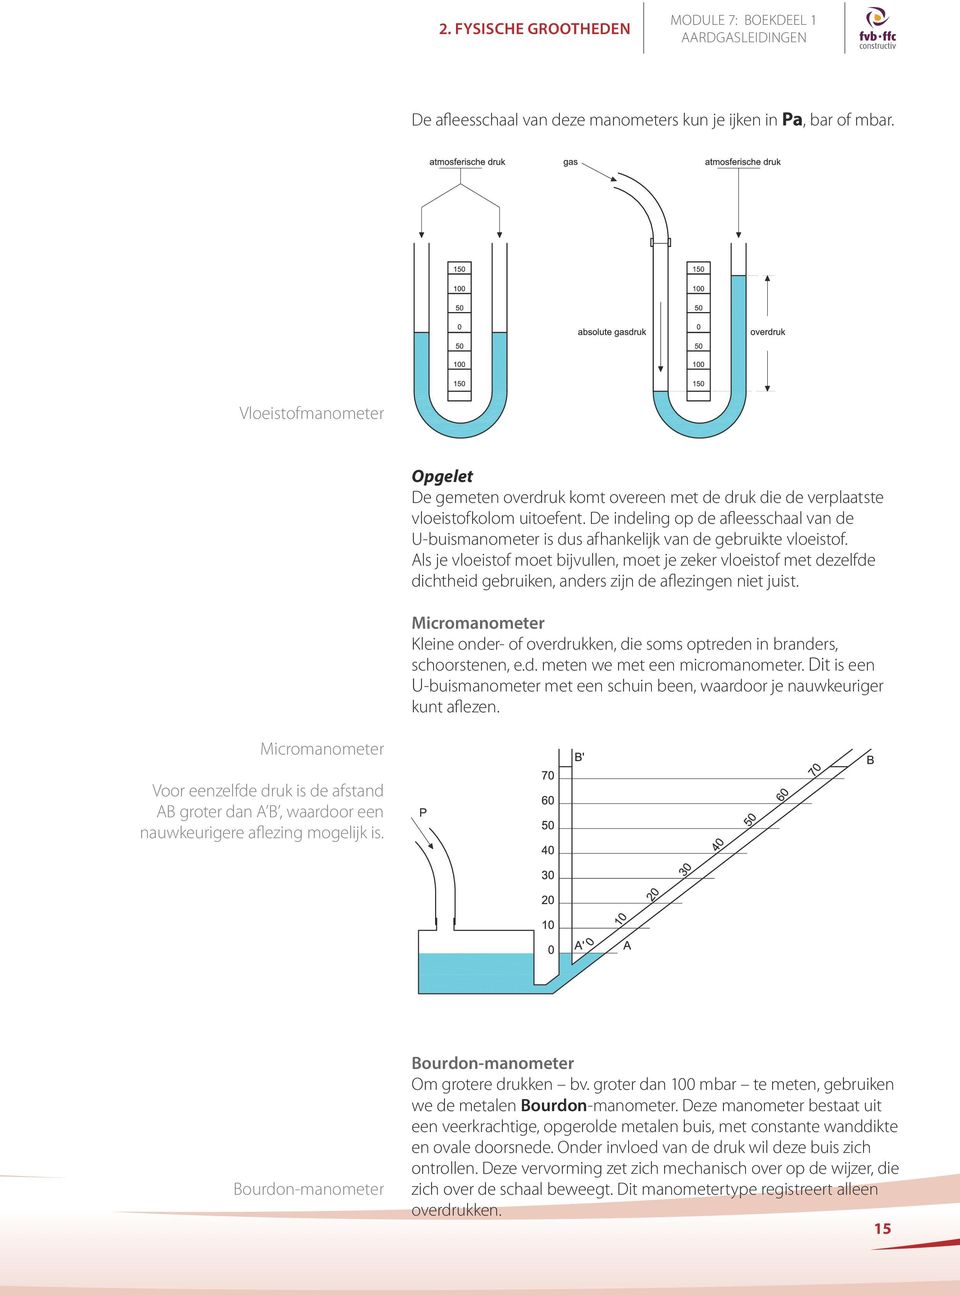 De indeling op de afleesschaal van de U-buismanometer is dus afhankelijk van de gebruikte vloeistof.